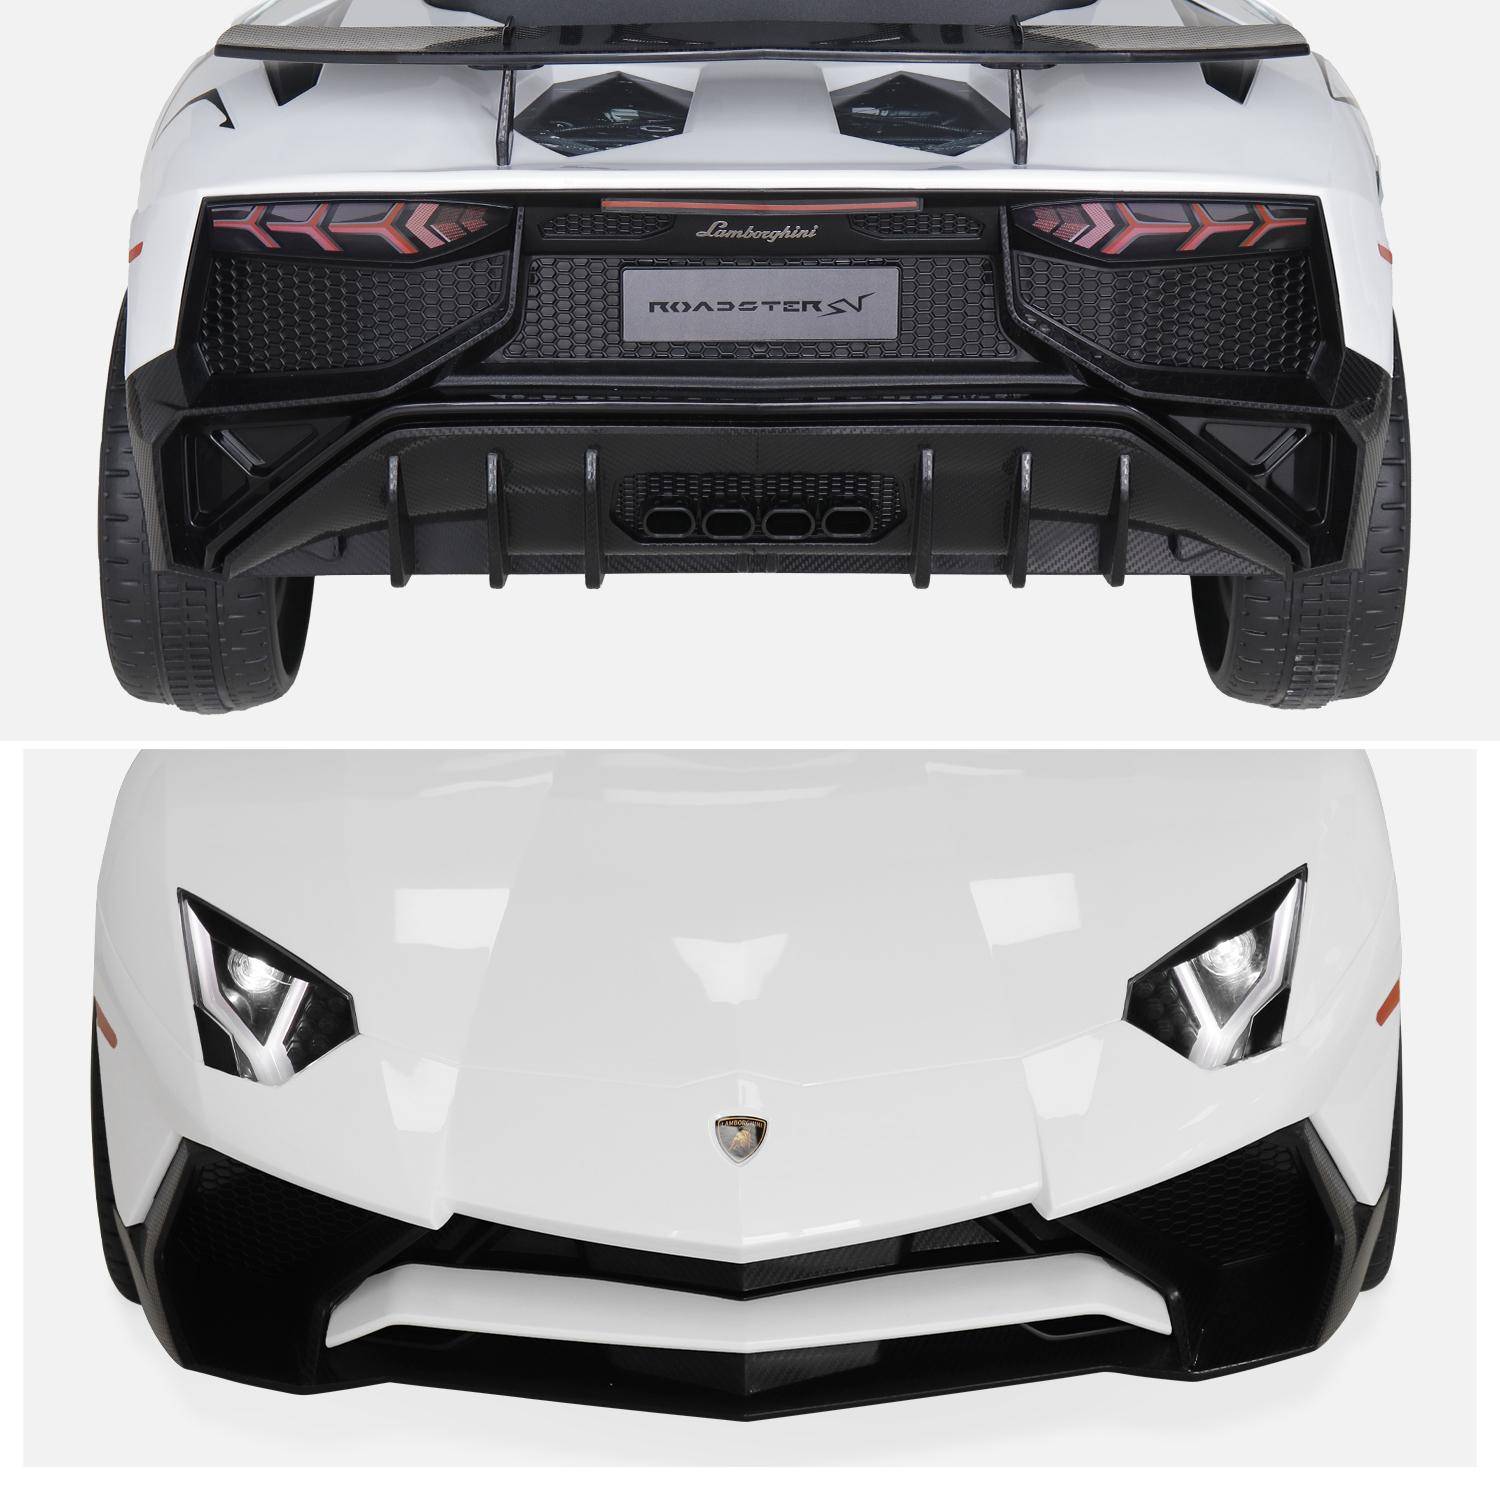 12V Lamborghini elektrische kinderauto, wit, 1 zitplaats, met autoradio, afstandsbediening, MP3, USB-poort en koplampen. Snelle levering, 2 jaar garantie. Photo8